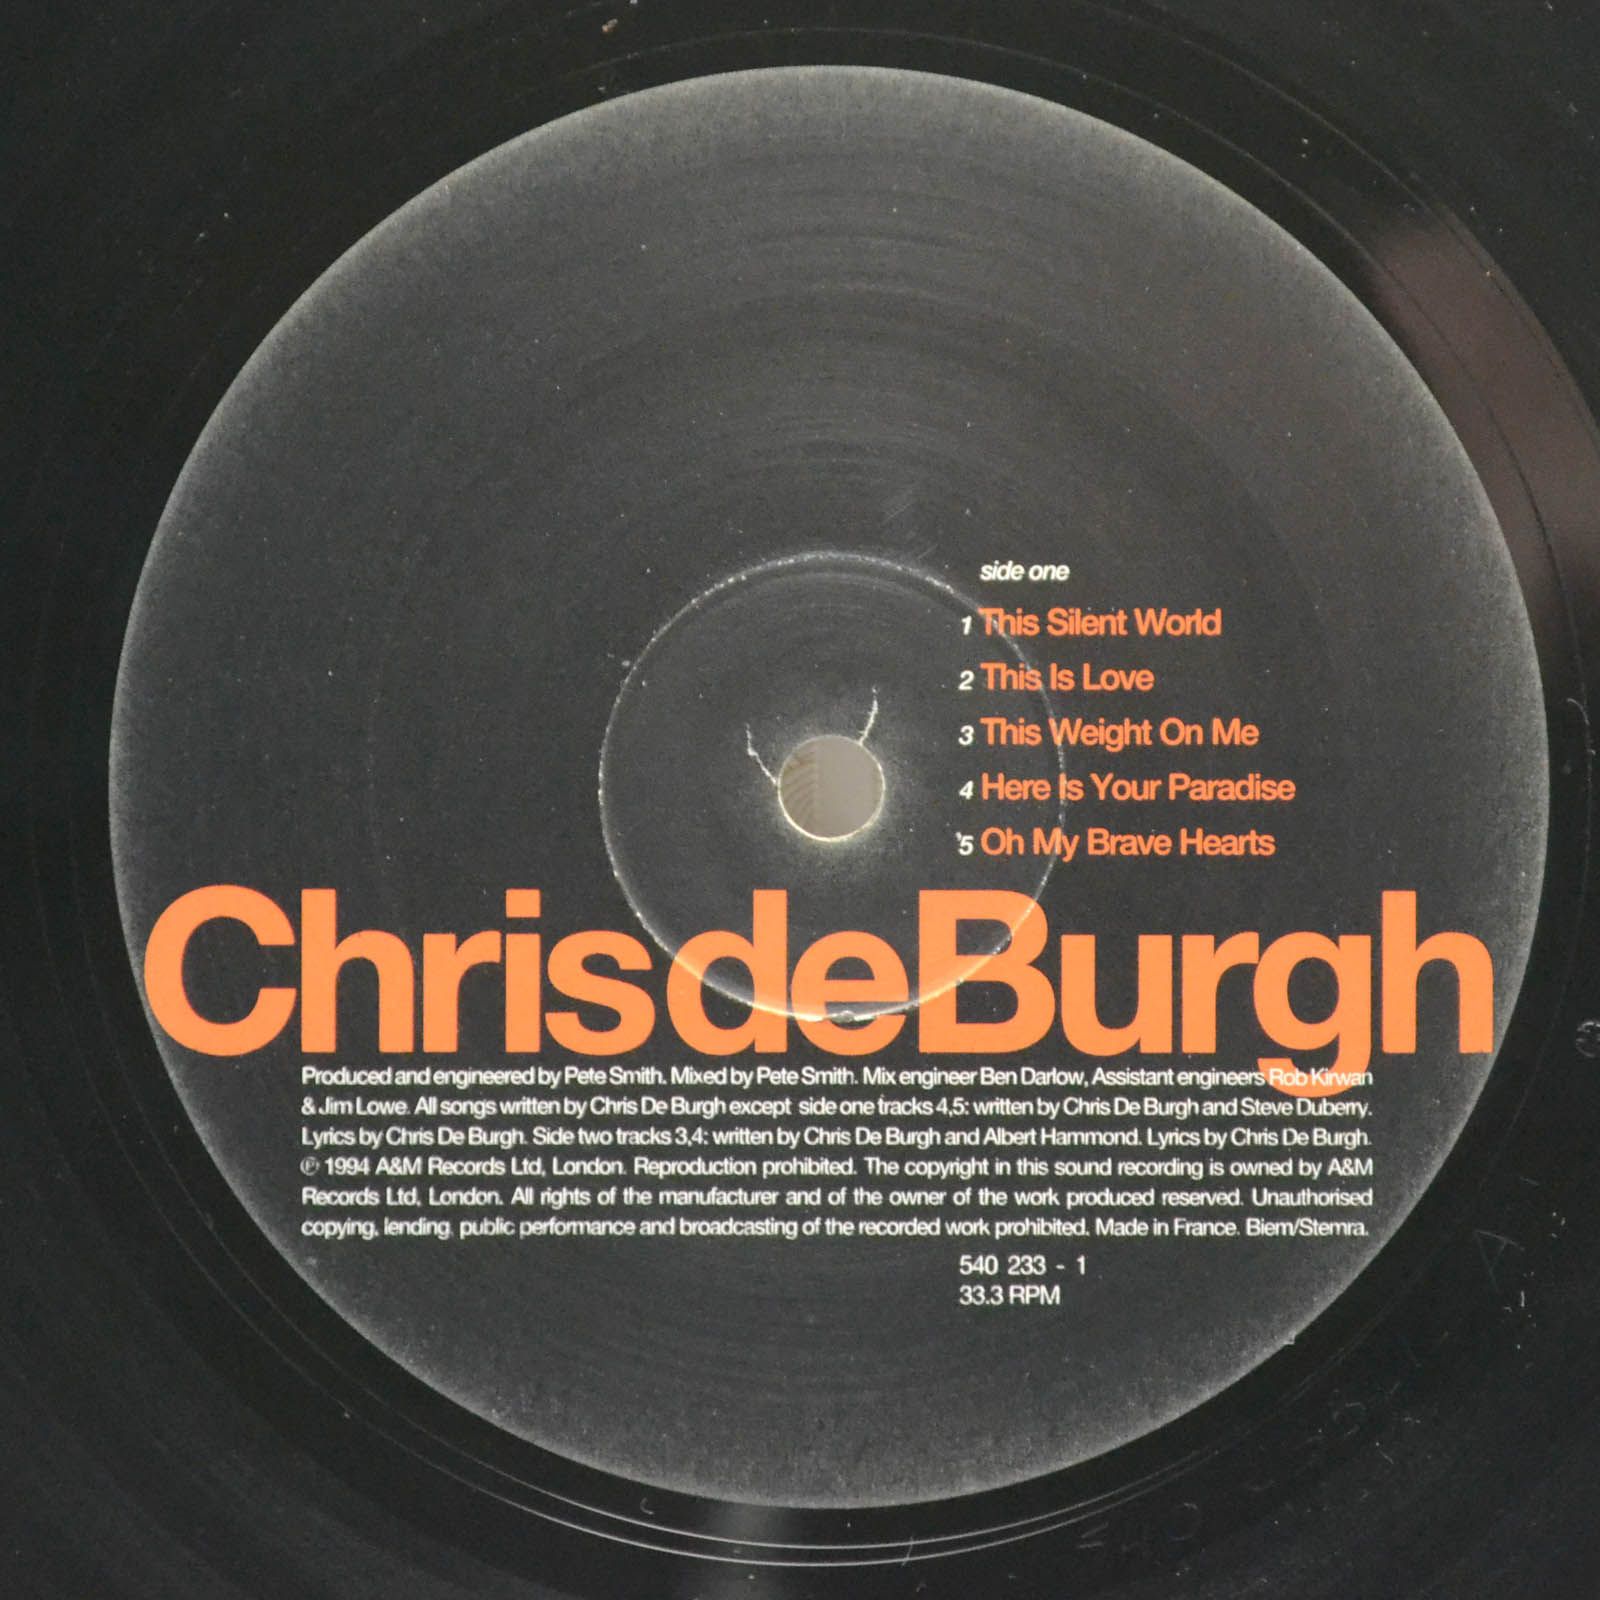 Chris De Burgh — This Way Up, 1994